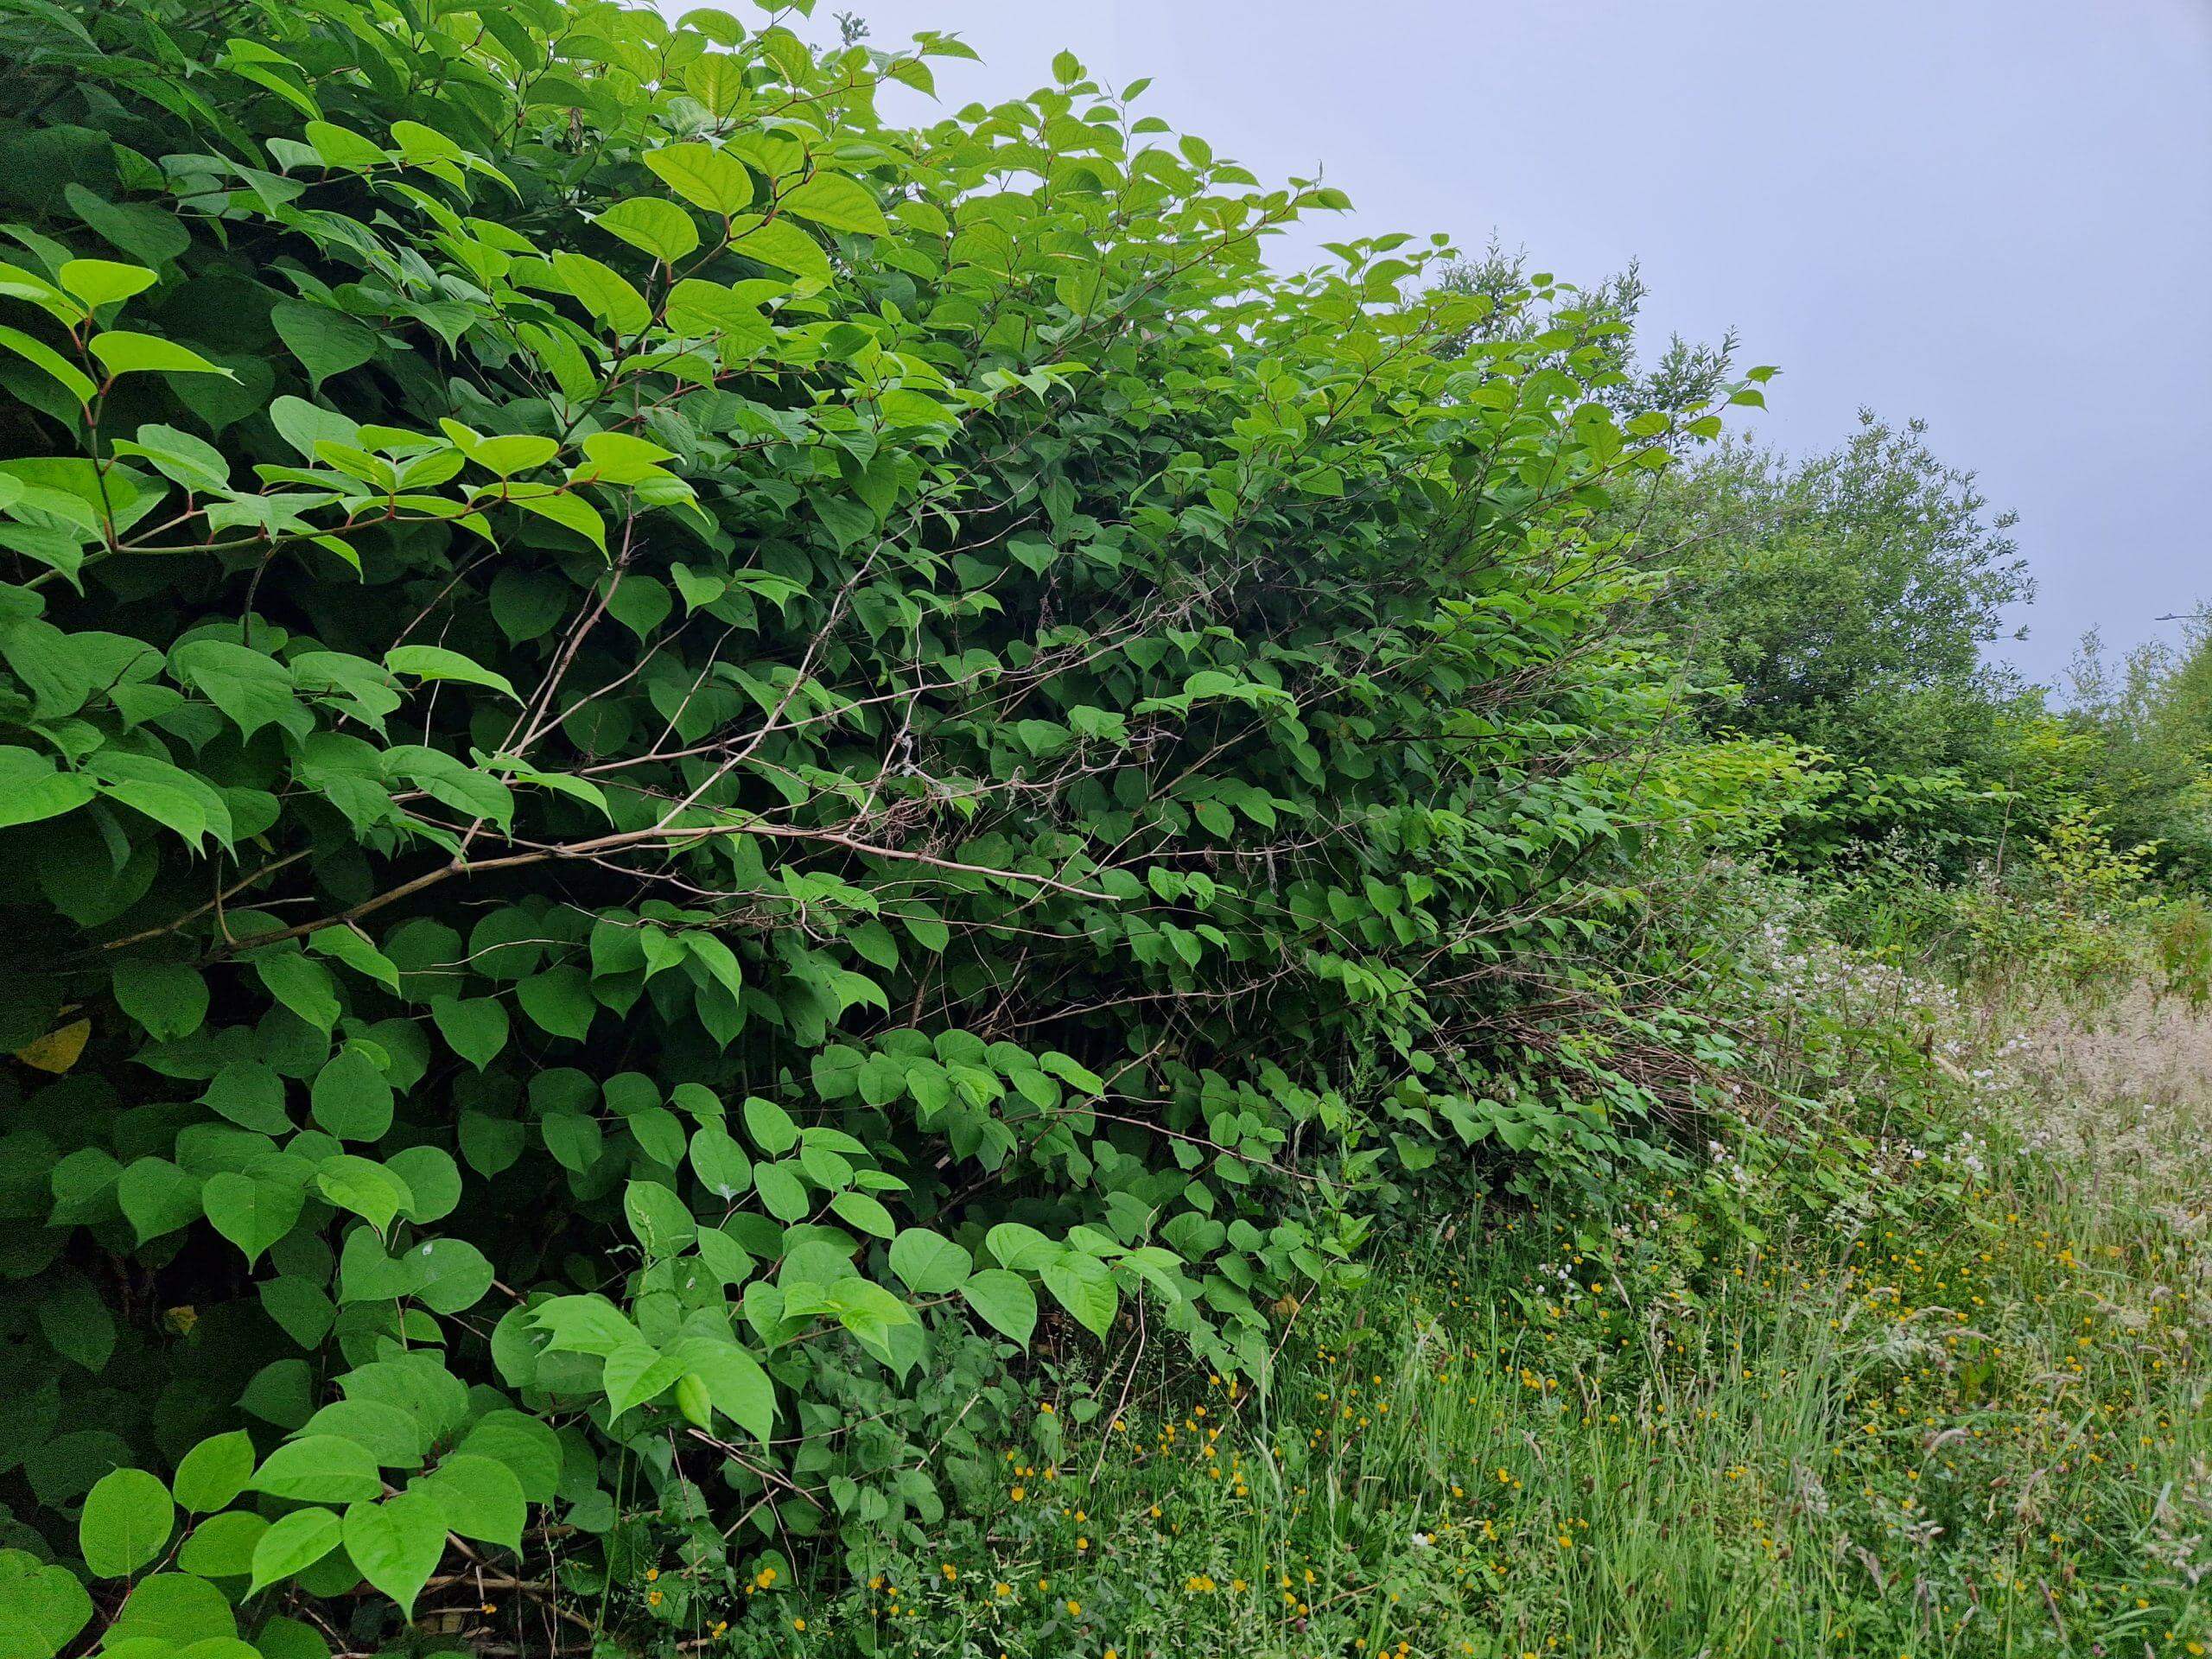 Japanese knotweed wildly growing on waste land